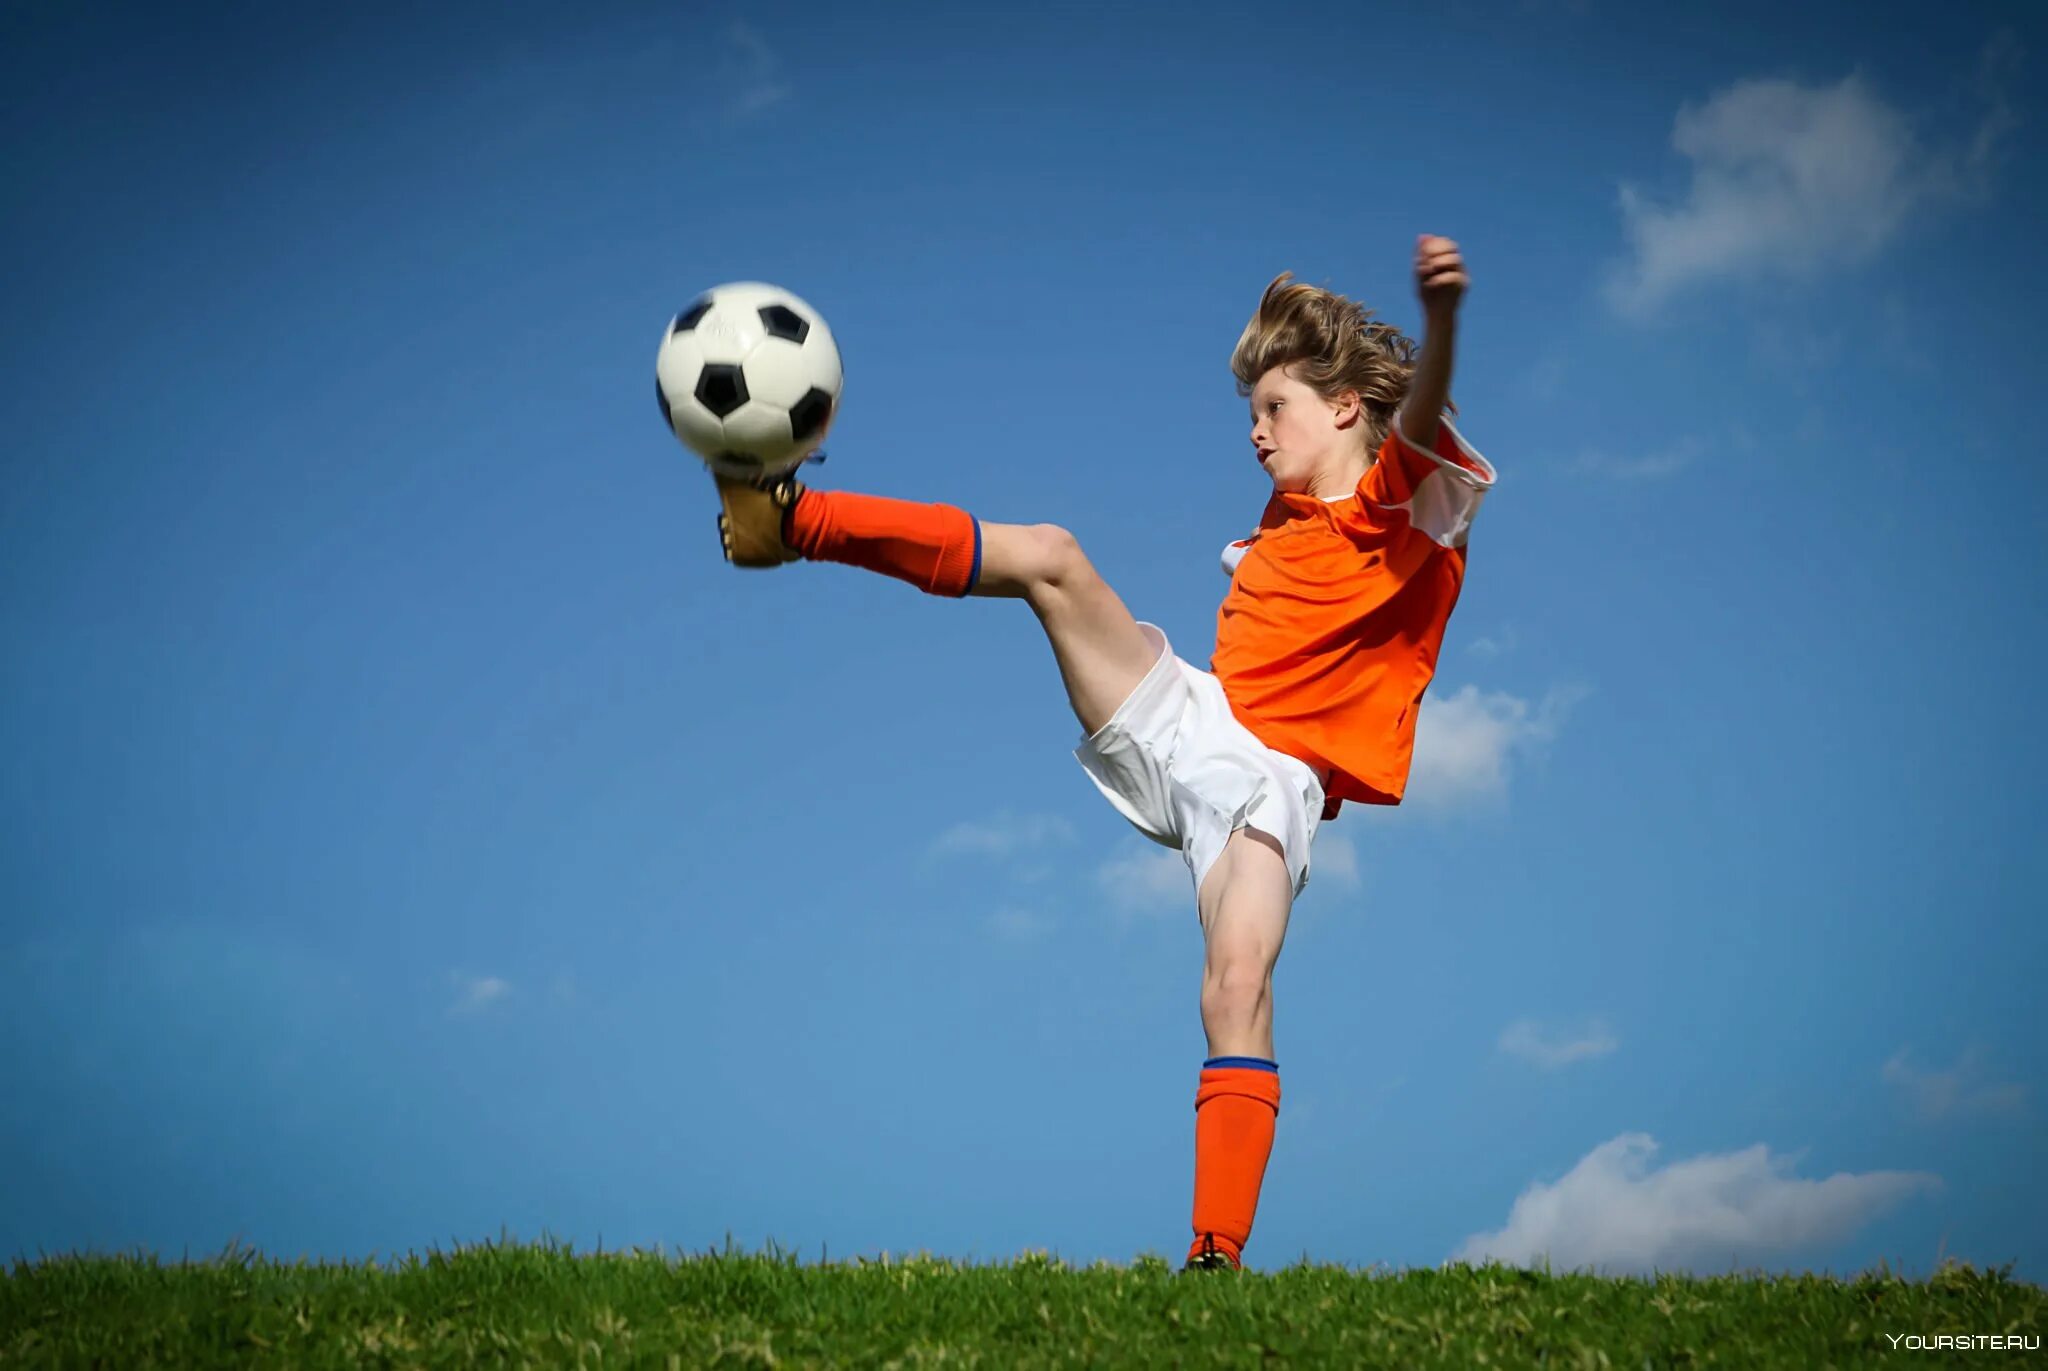 Do you enjoy playing sports. Спорт дети. Мальчик с футбольным мячом. Ребенок с футбольным мячом. Подросток с футбольным мячом.